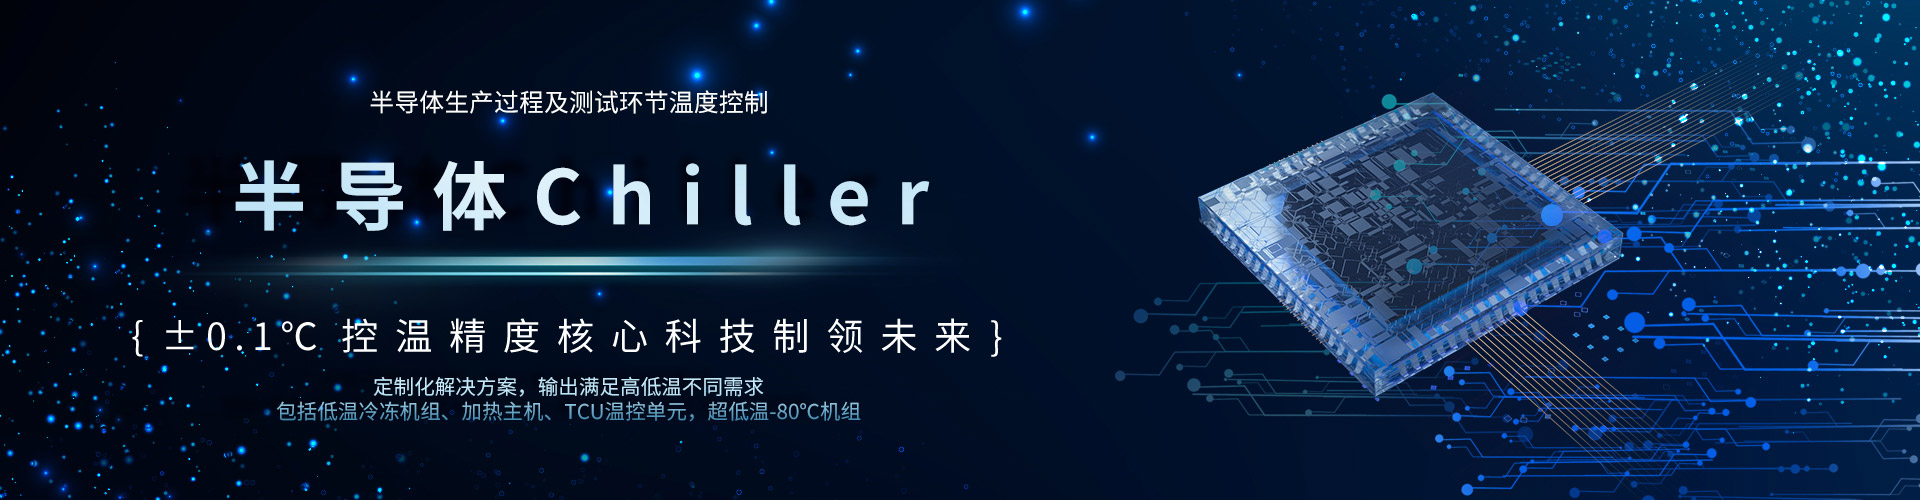 半導體Chiller-深圳市奧德機械有限公司官網